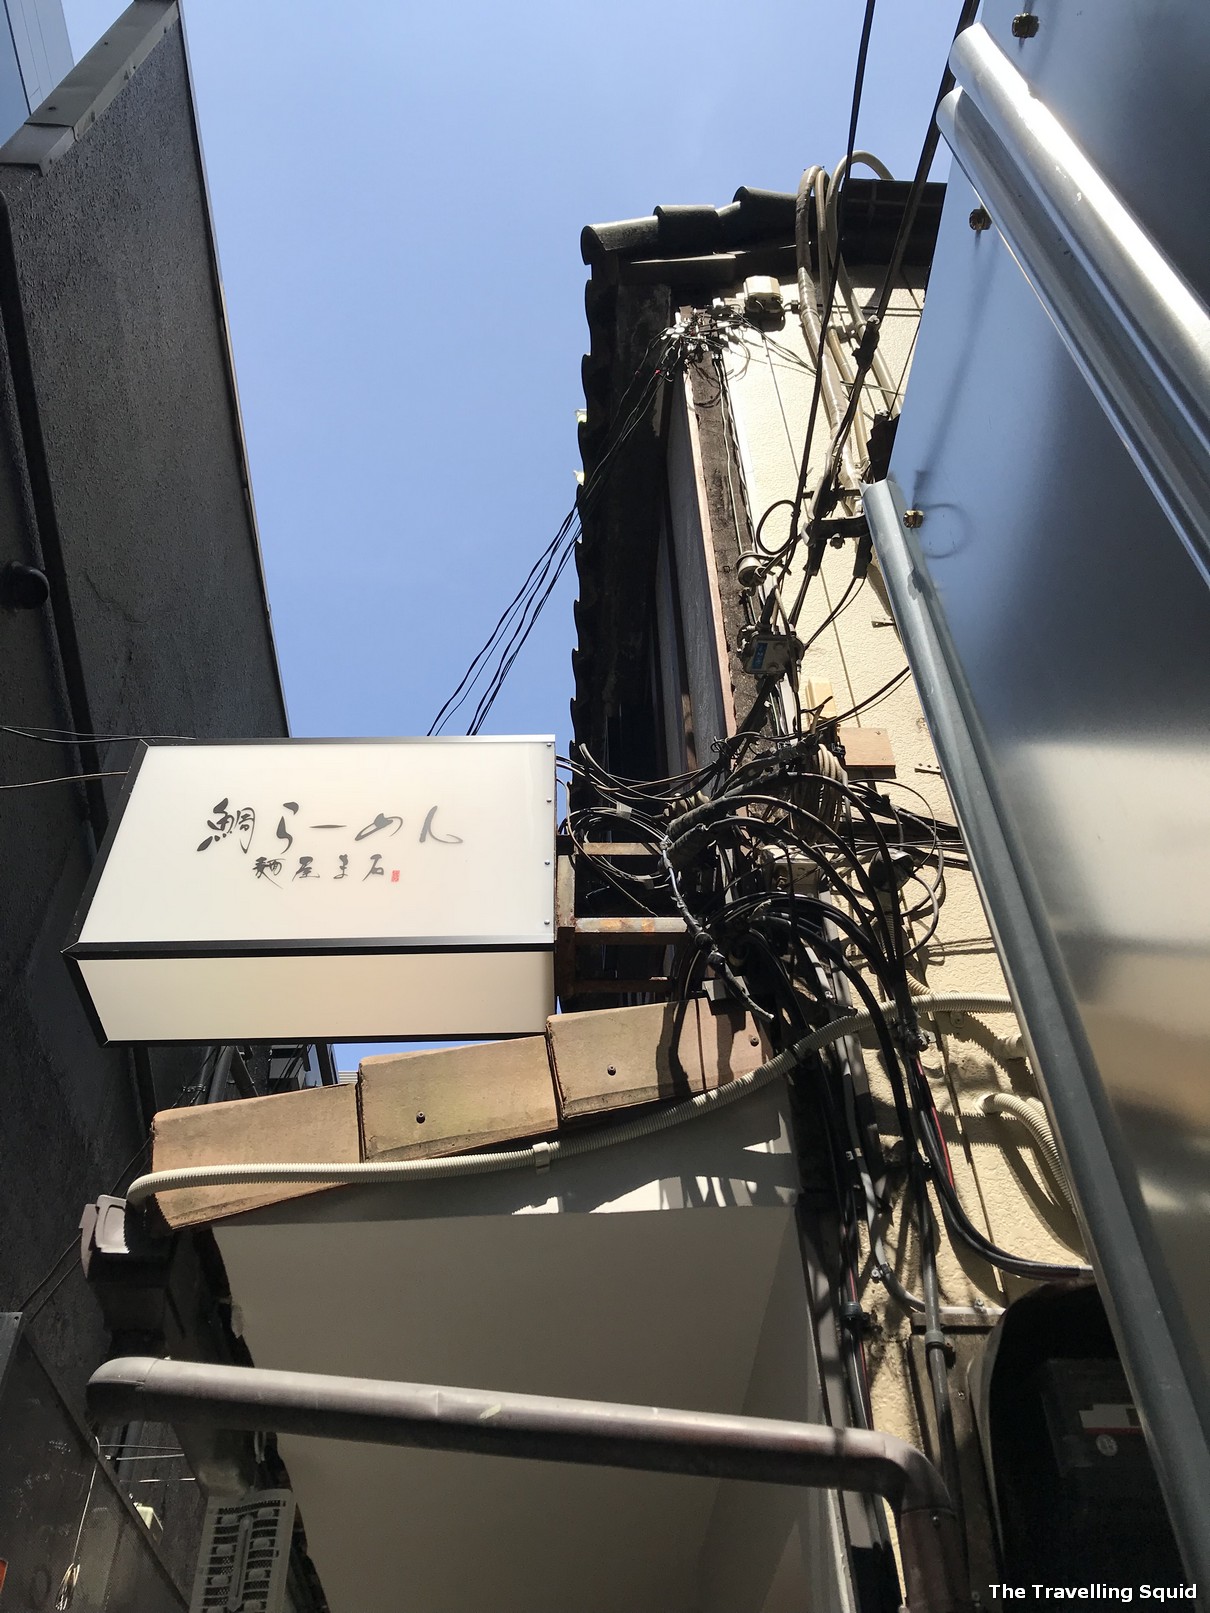 sea bream ramen at Menya Maishi in Ginza Tokyo